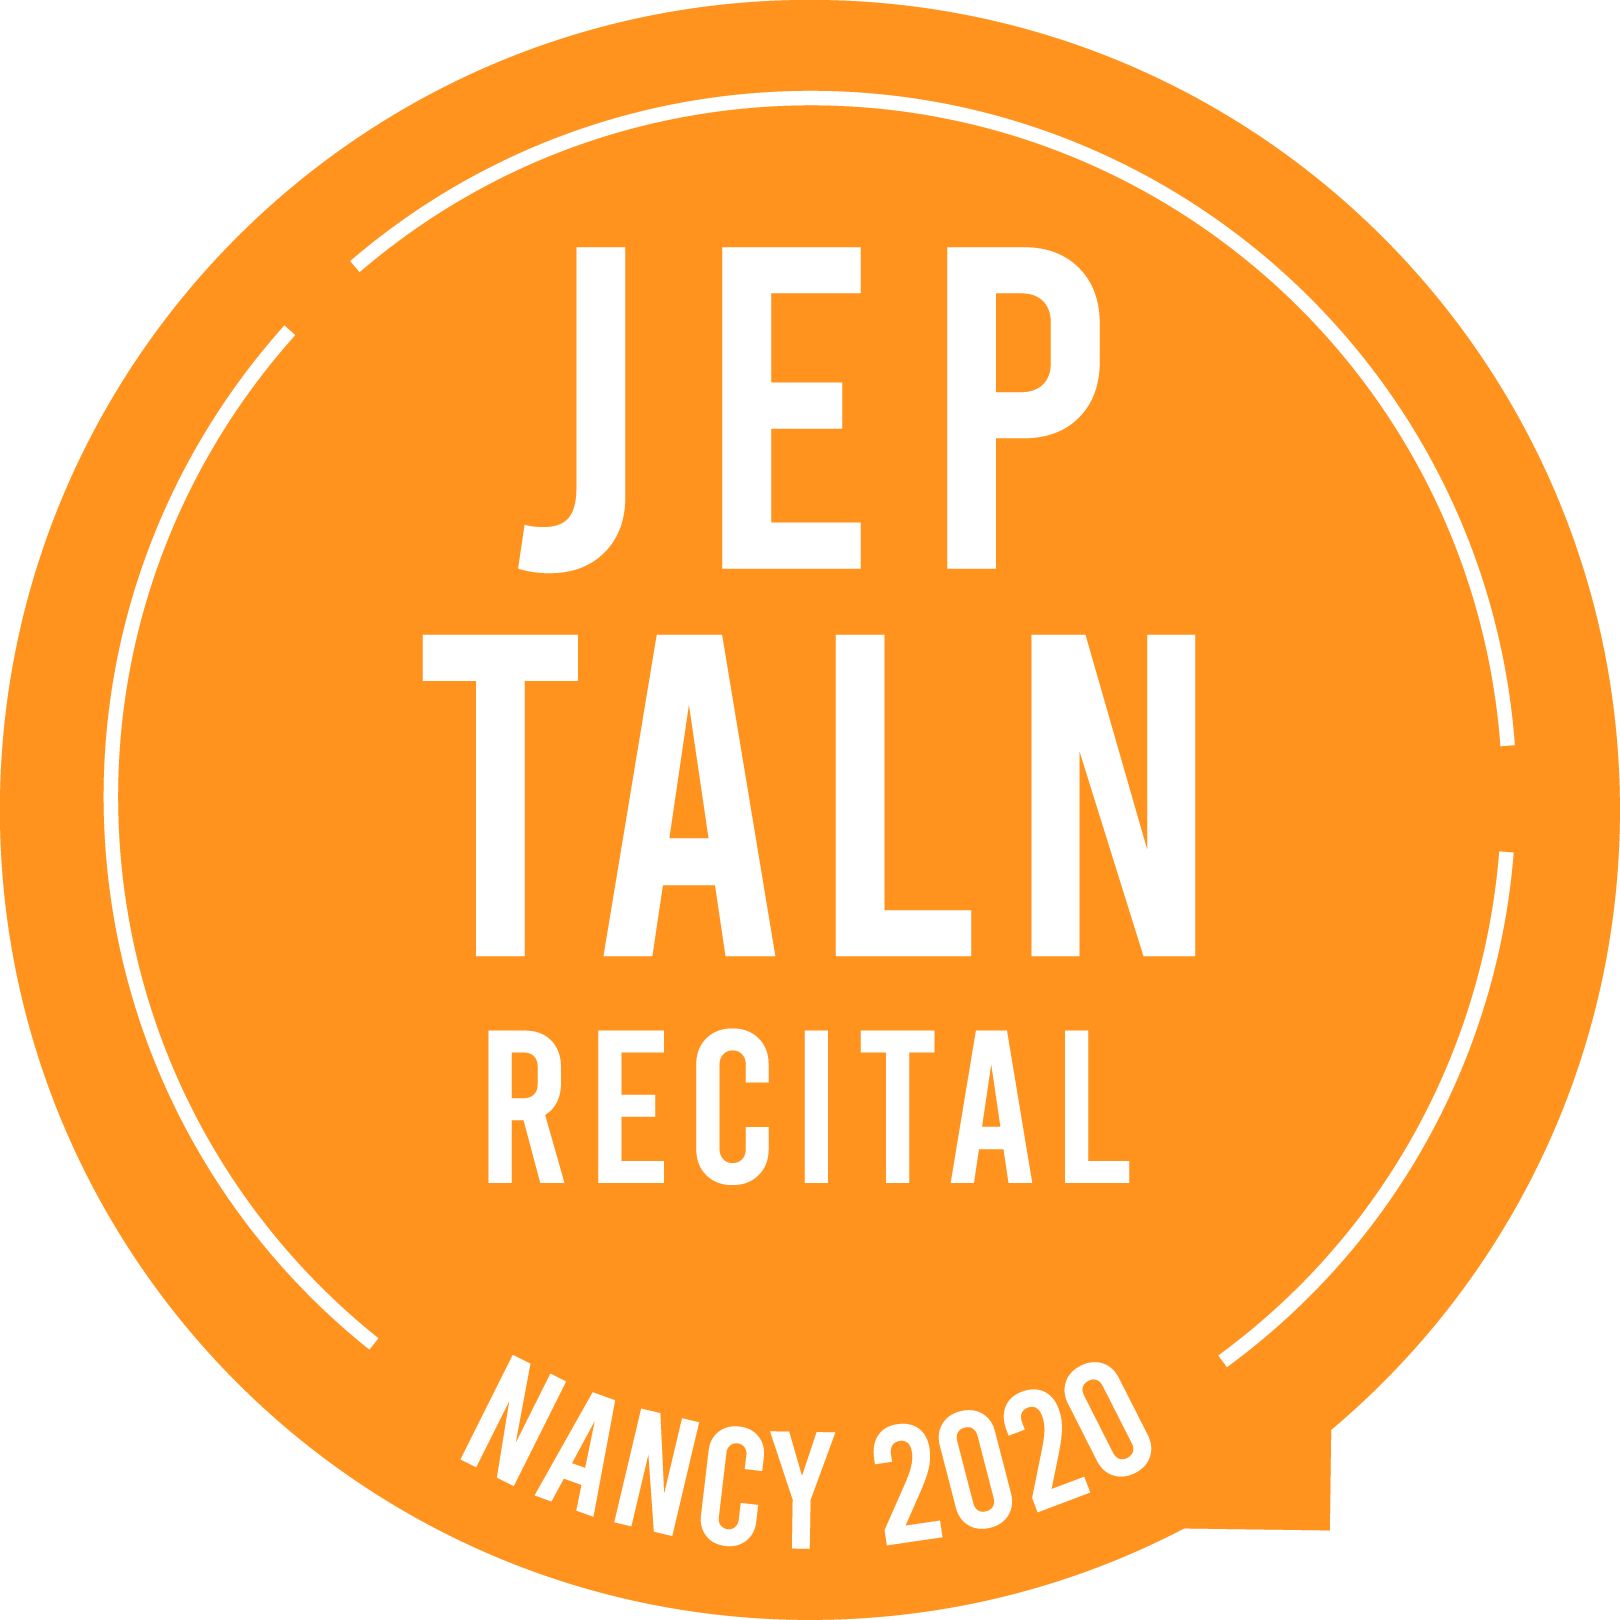 JEP-TALN-RECITAL 2020 in Nancy